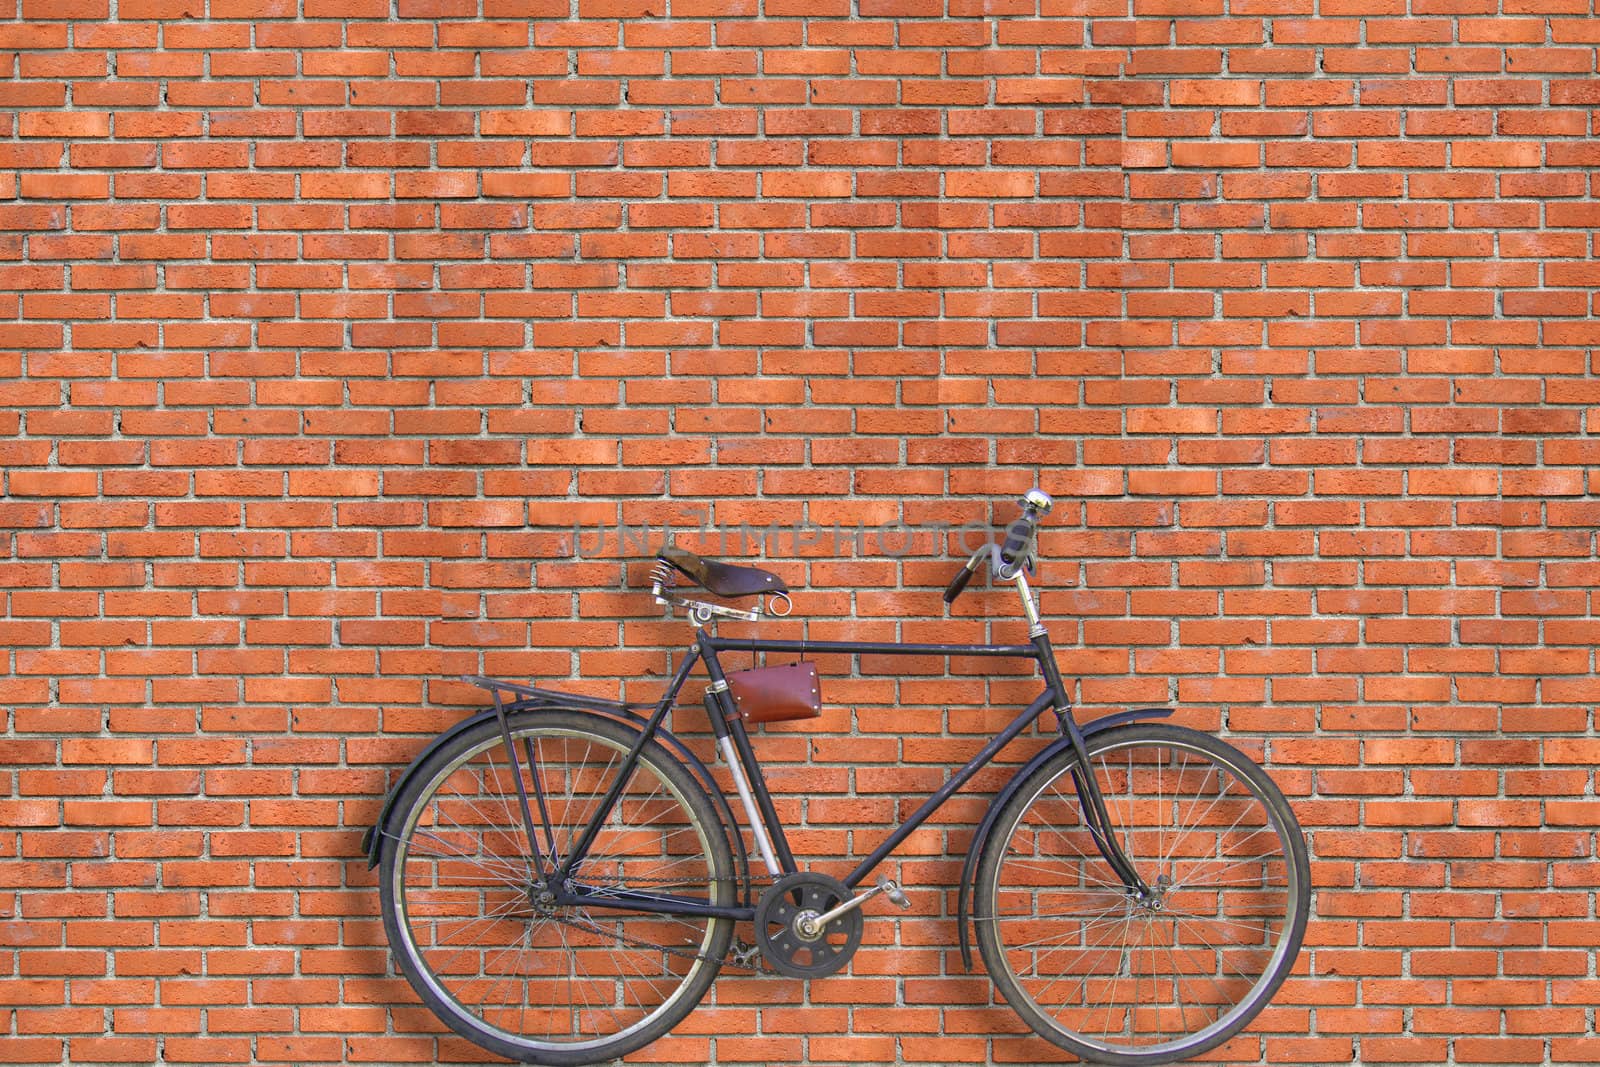 Brick wall and bicycle by petrkurgan